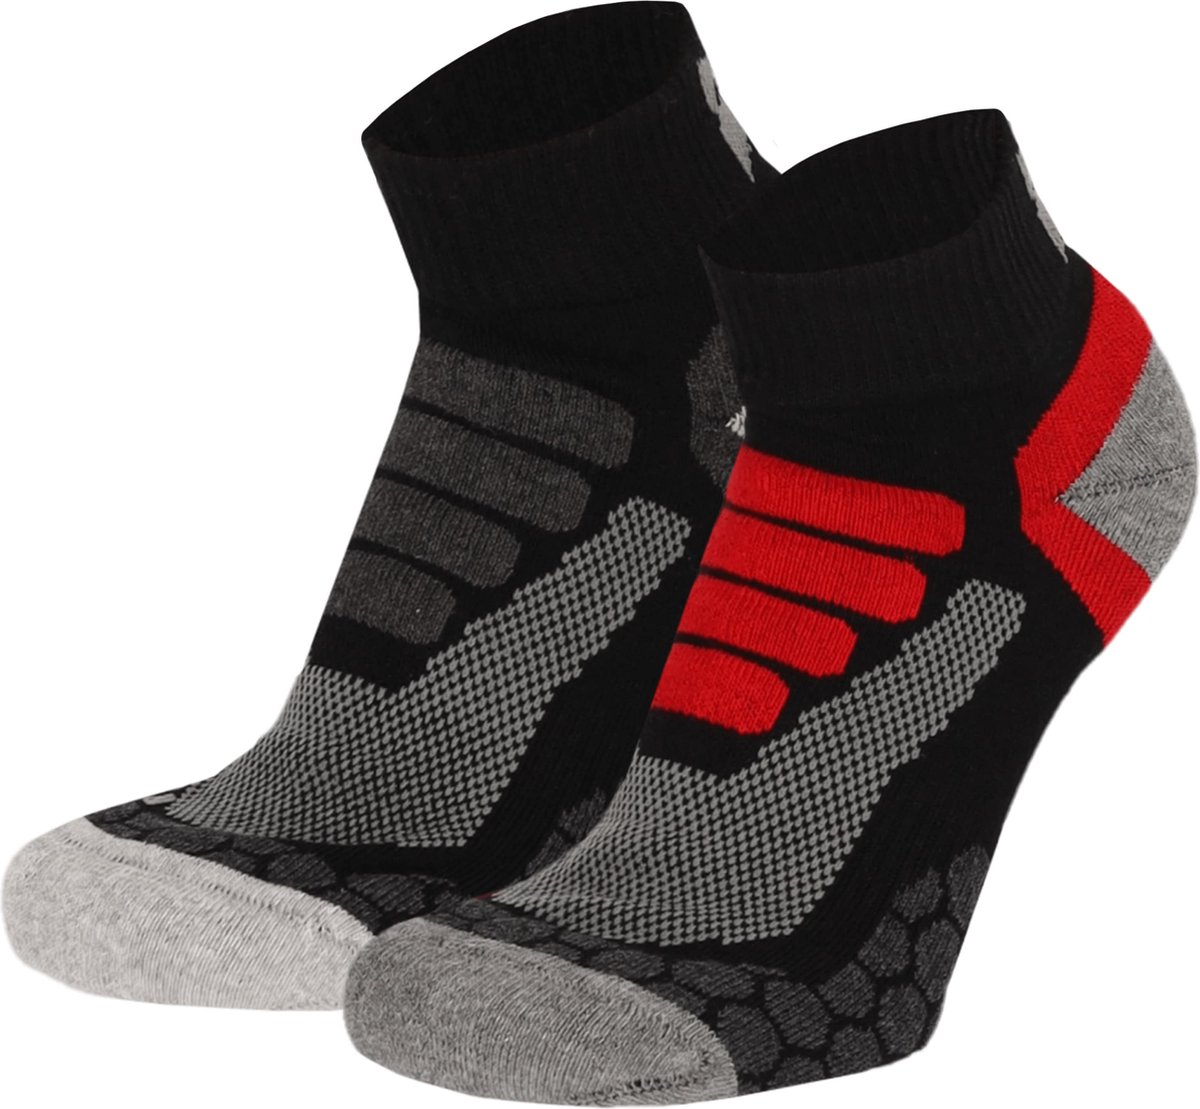 Xtreme Wandelsokken Quarter - Lage hiking sokken - 2-pack - Multi Black - Maat 39/42